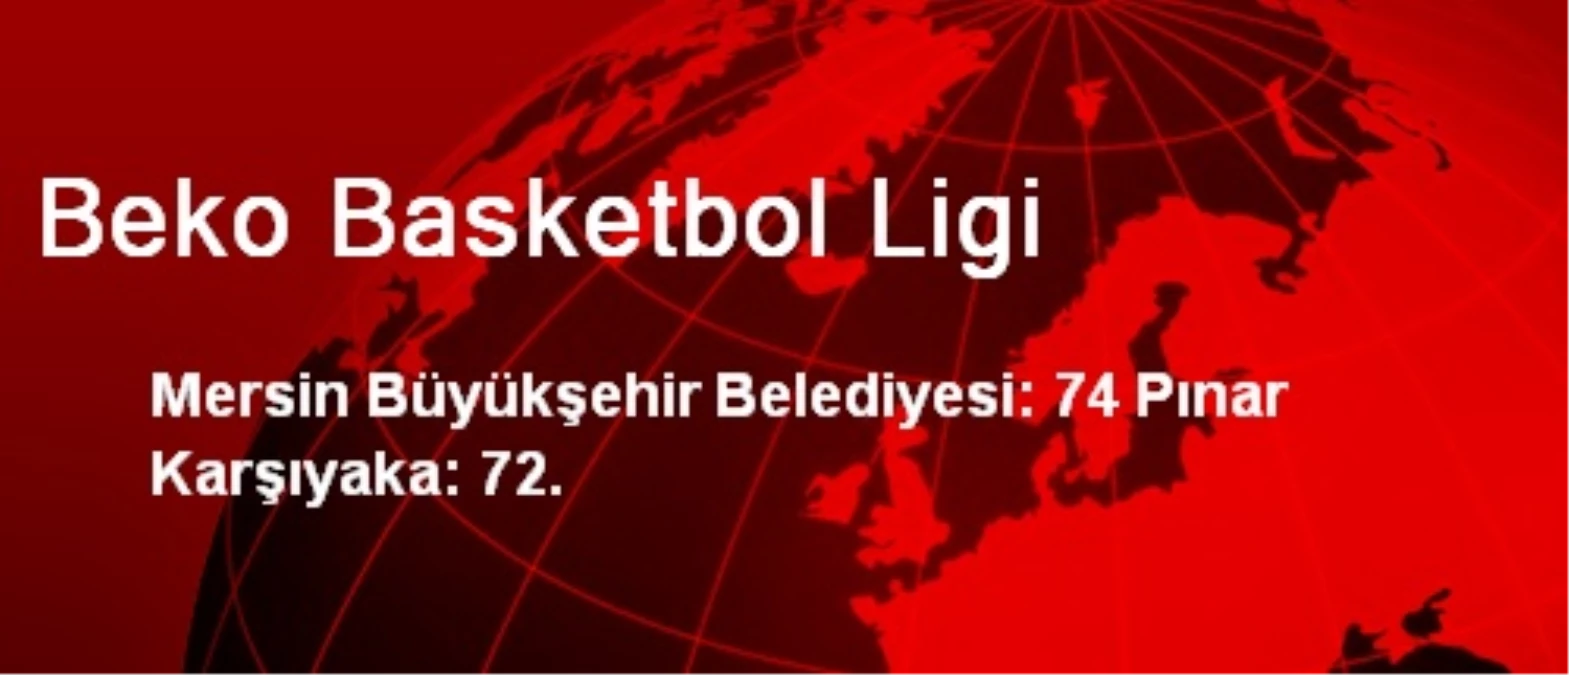 Mersin Büyükşehir Belediyesi: 74 Pınar Karşıyaka: 72